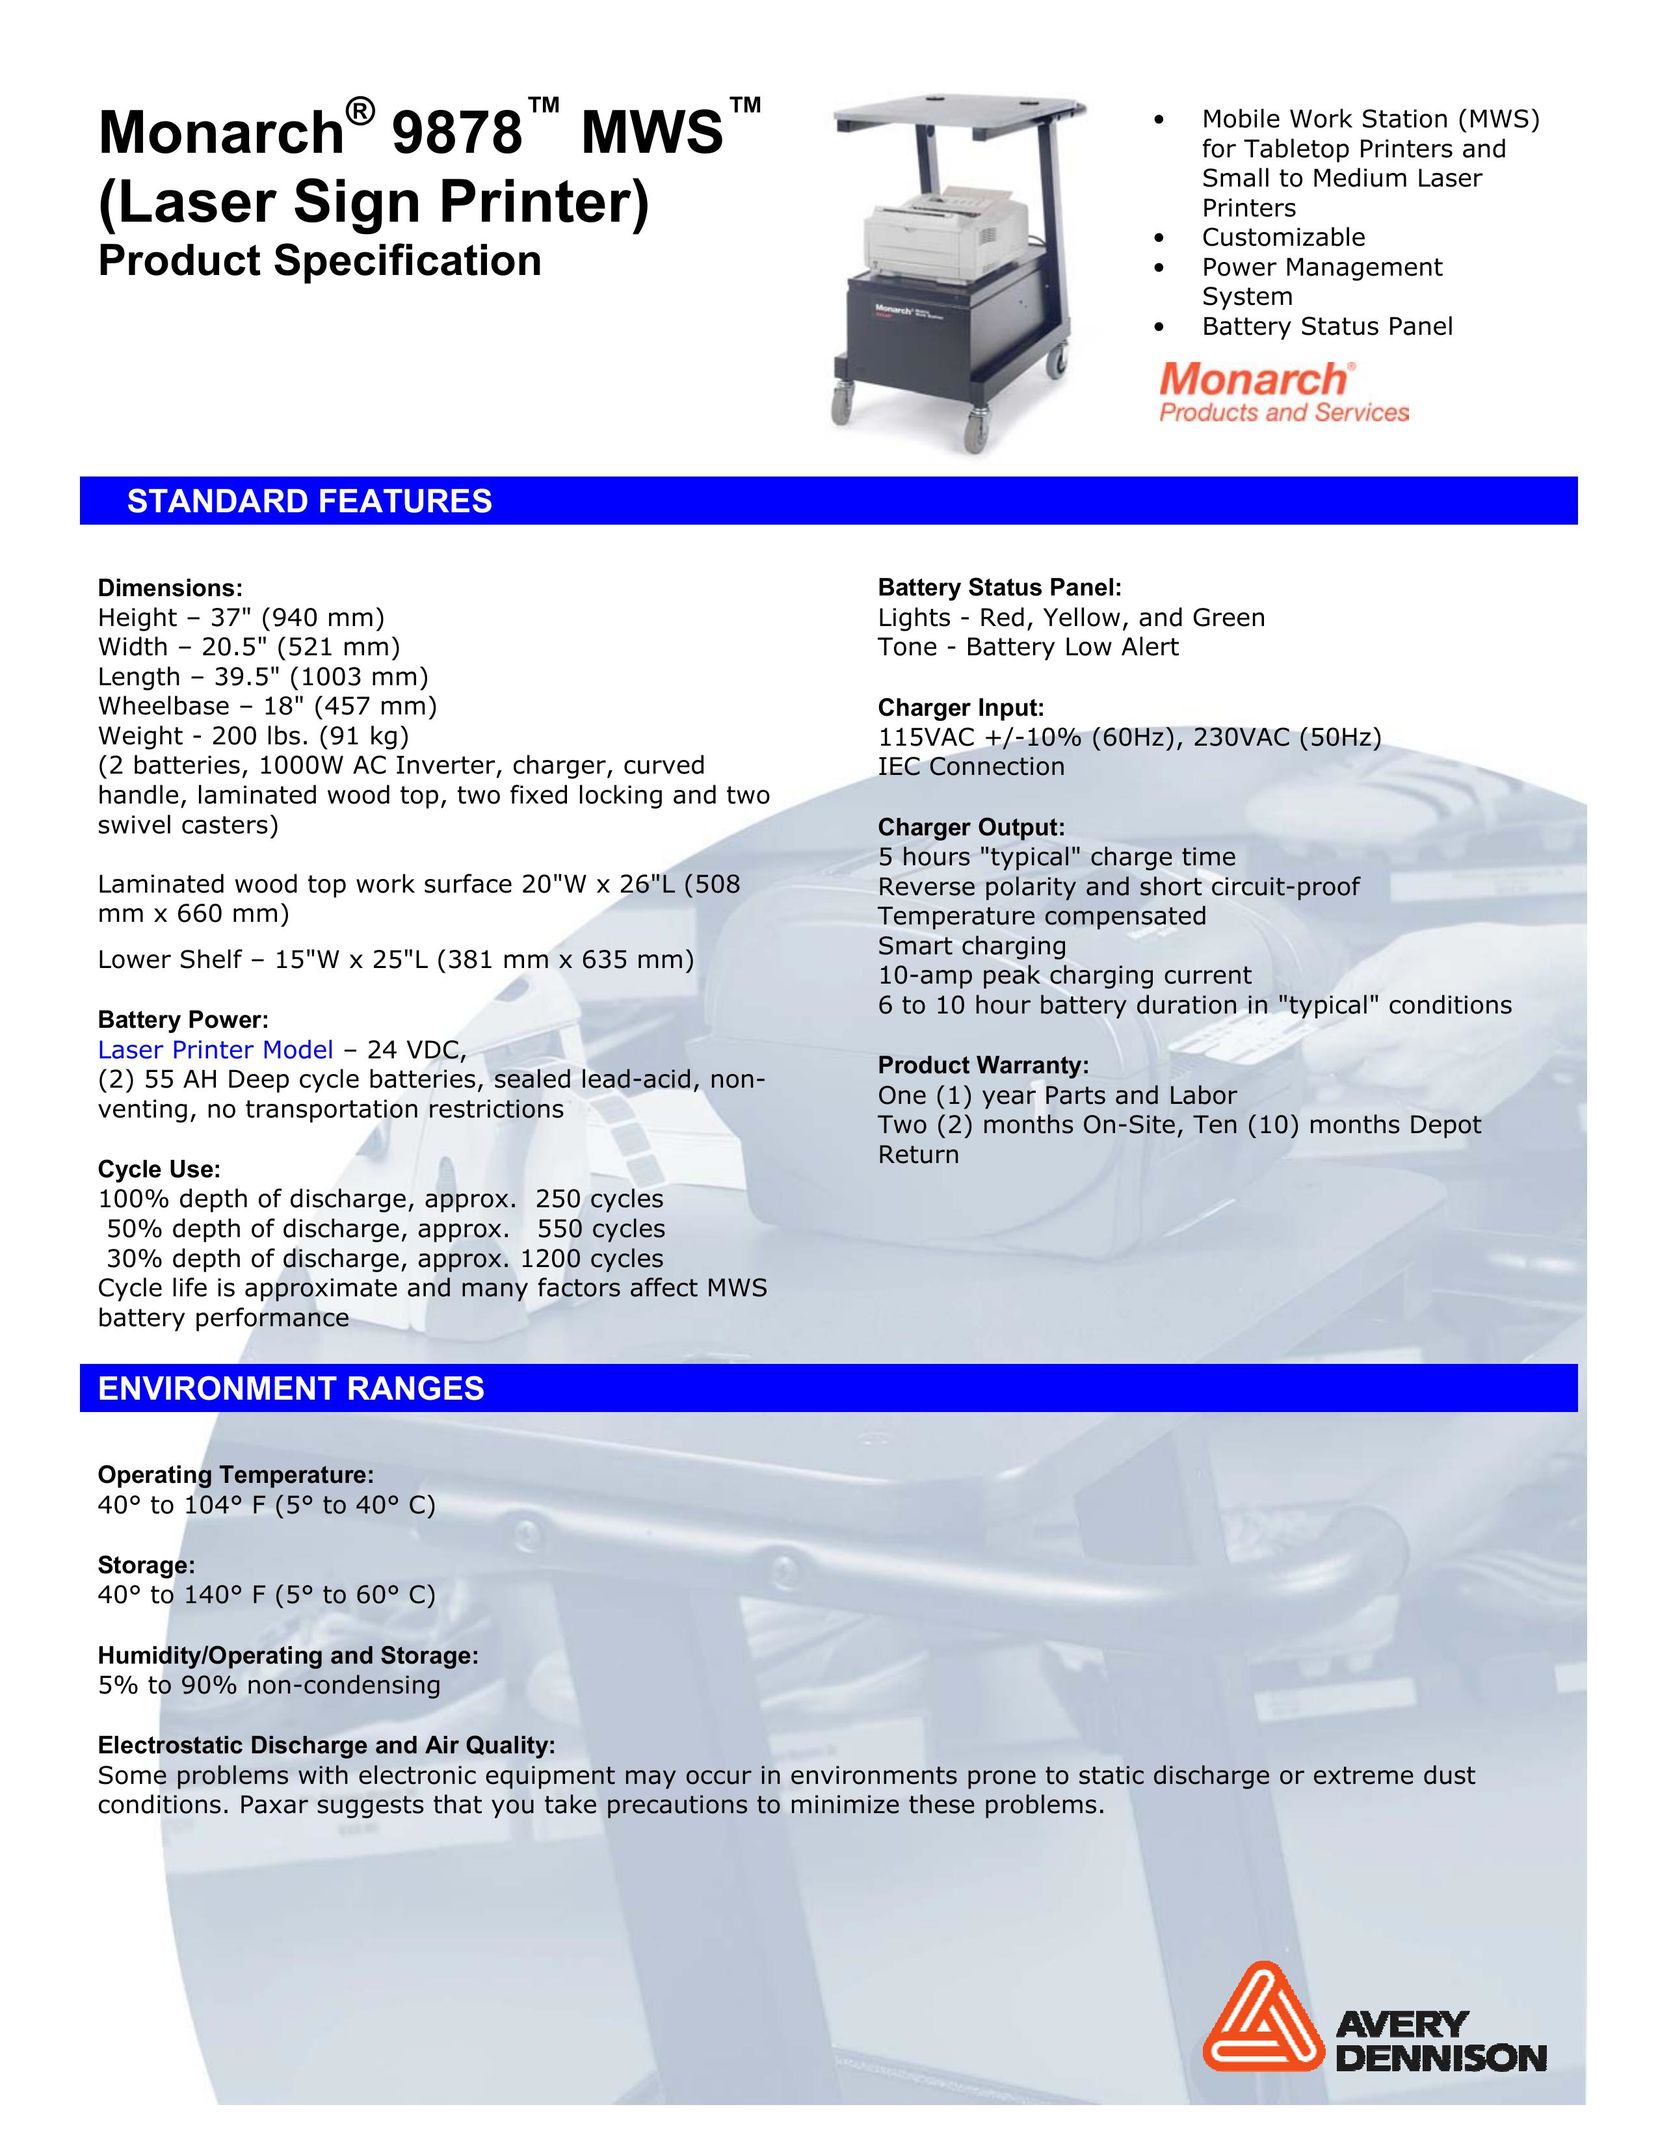 Monarch 9878 Printer User Manual